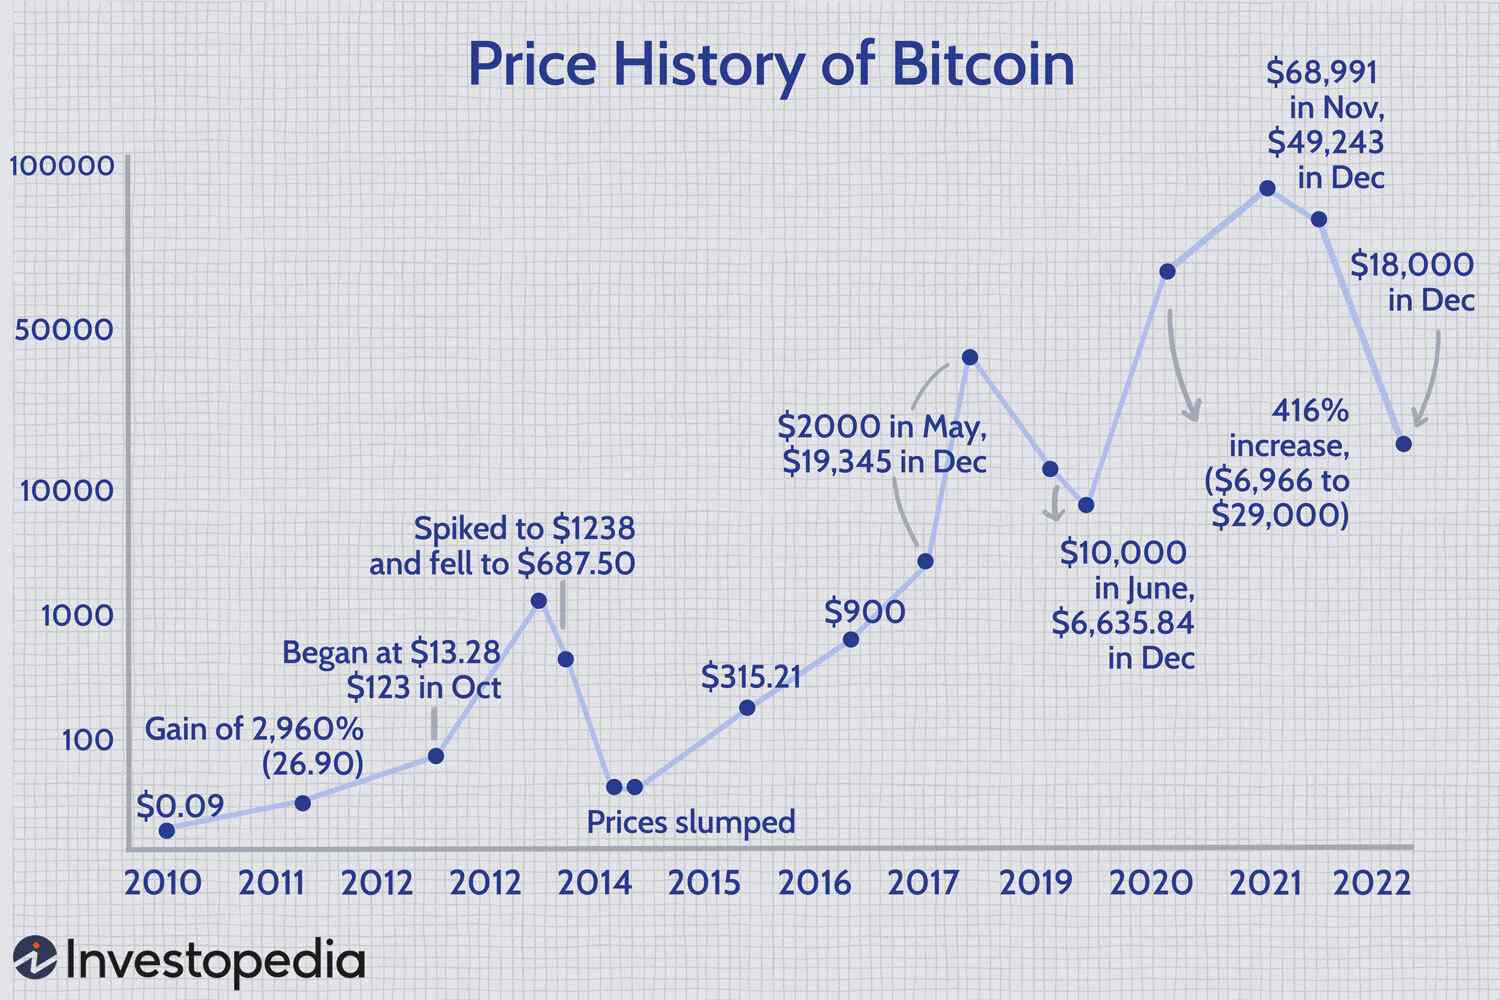 Bitcoin Average Cost Per Transaction